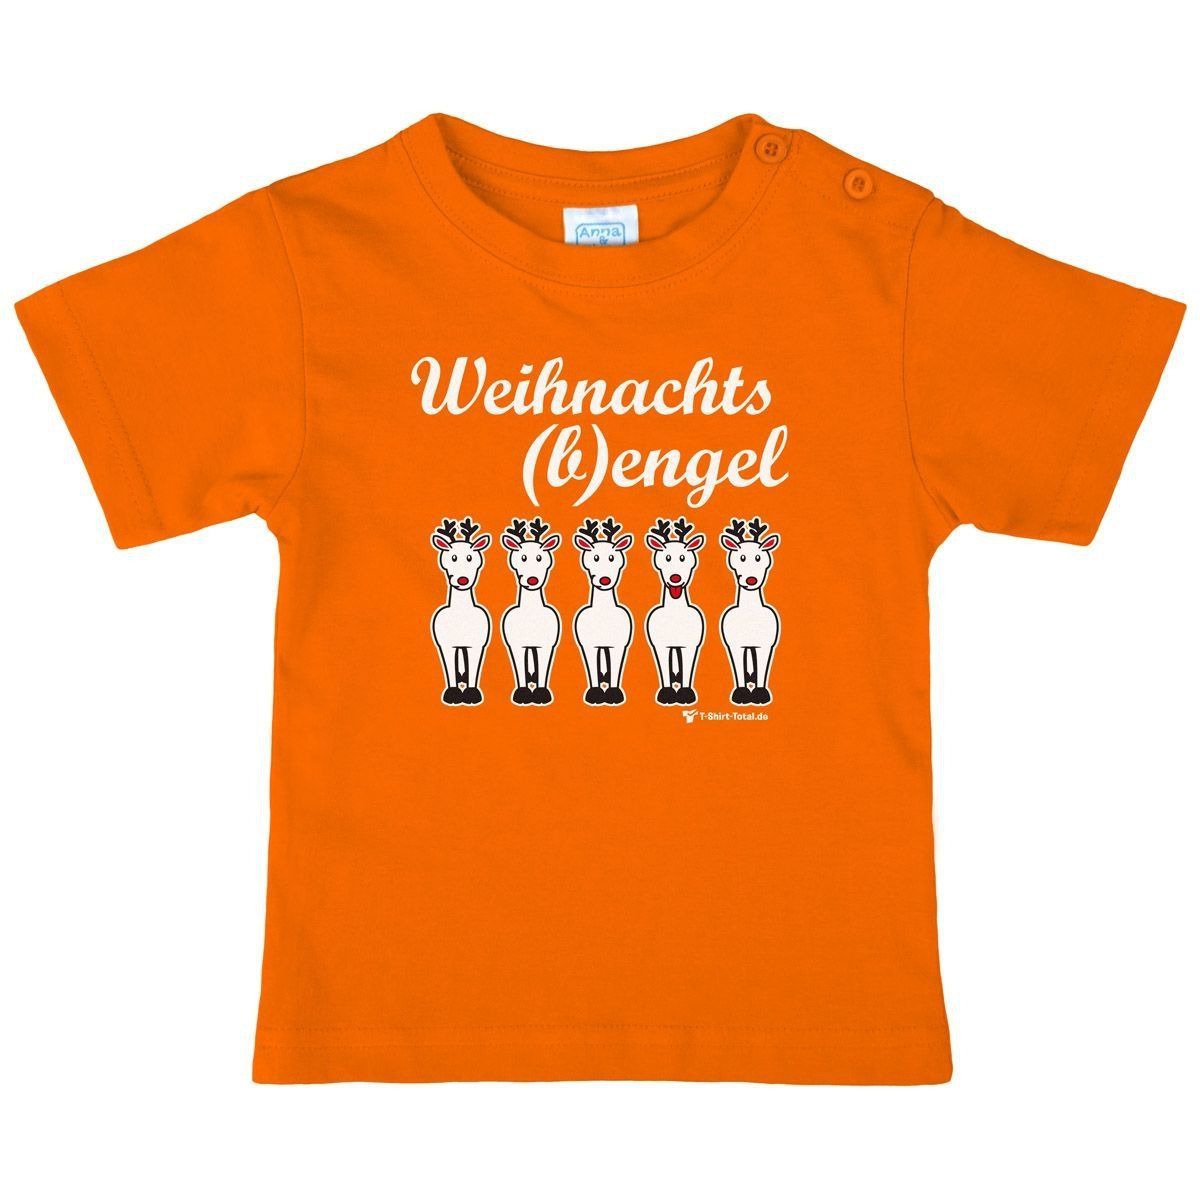 Weihnachtsbengel Kinder T-Shirt orange 80 / 86